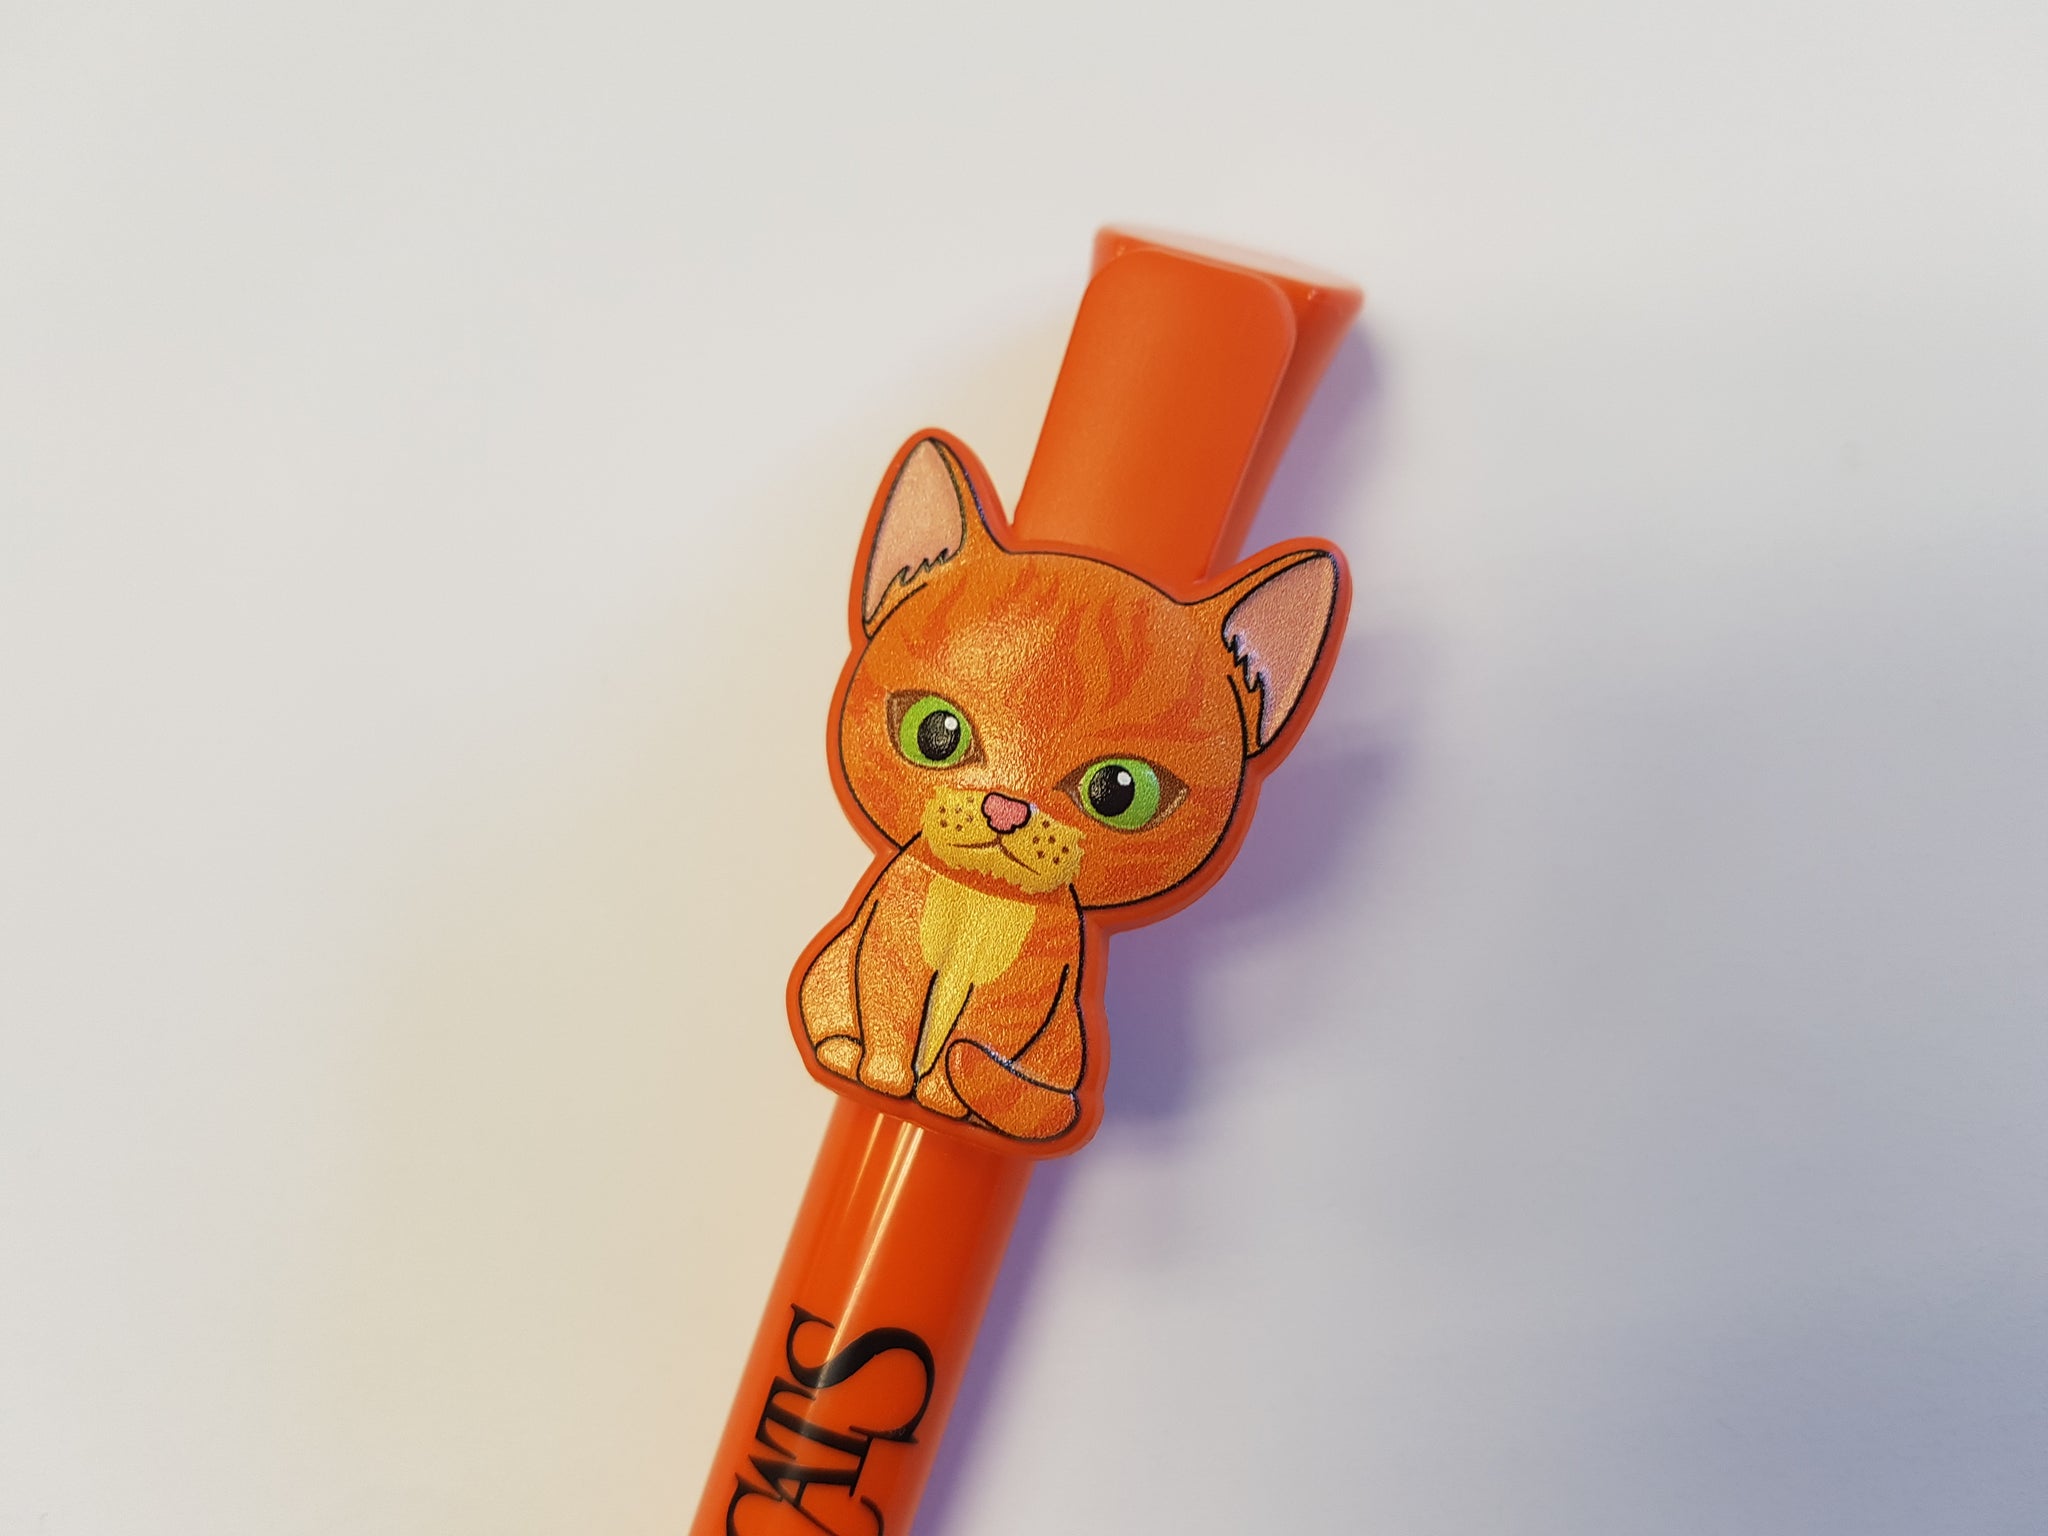 Warrior Cats Minis Pencil Tin